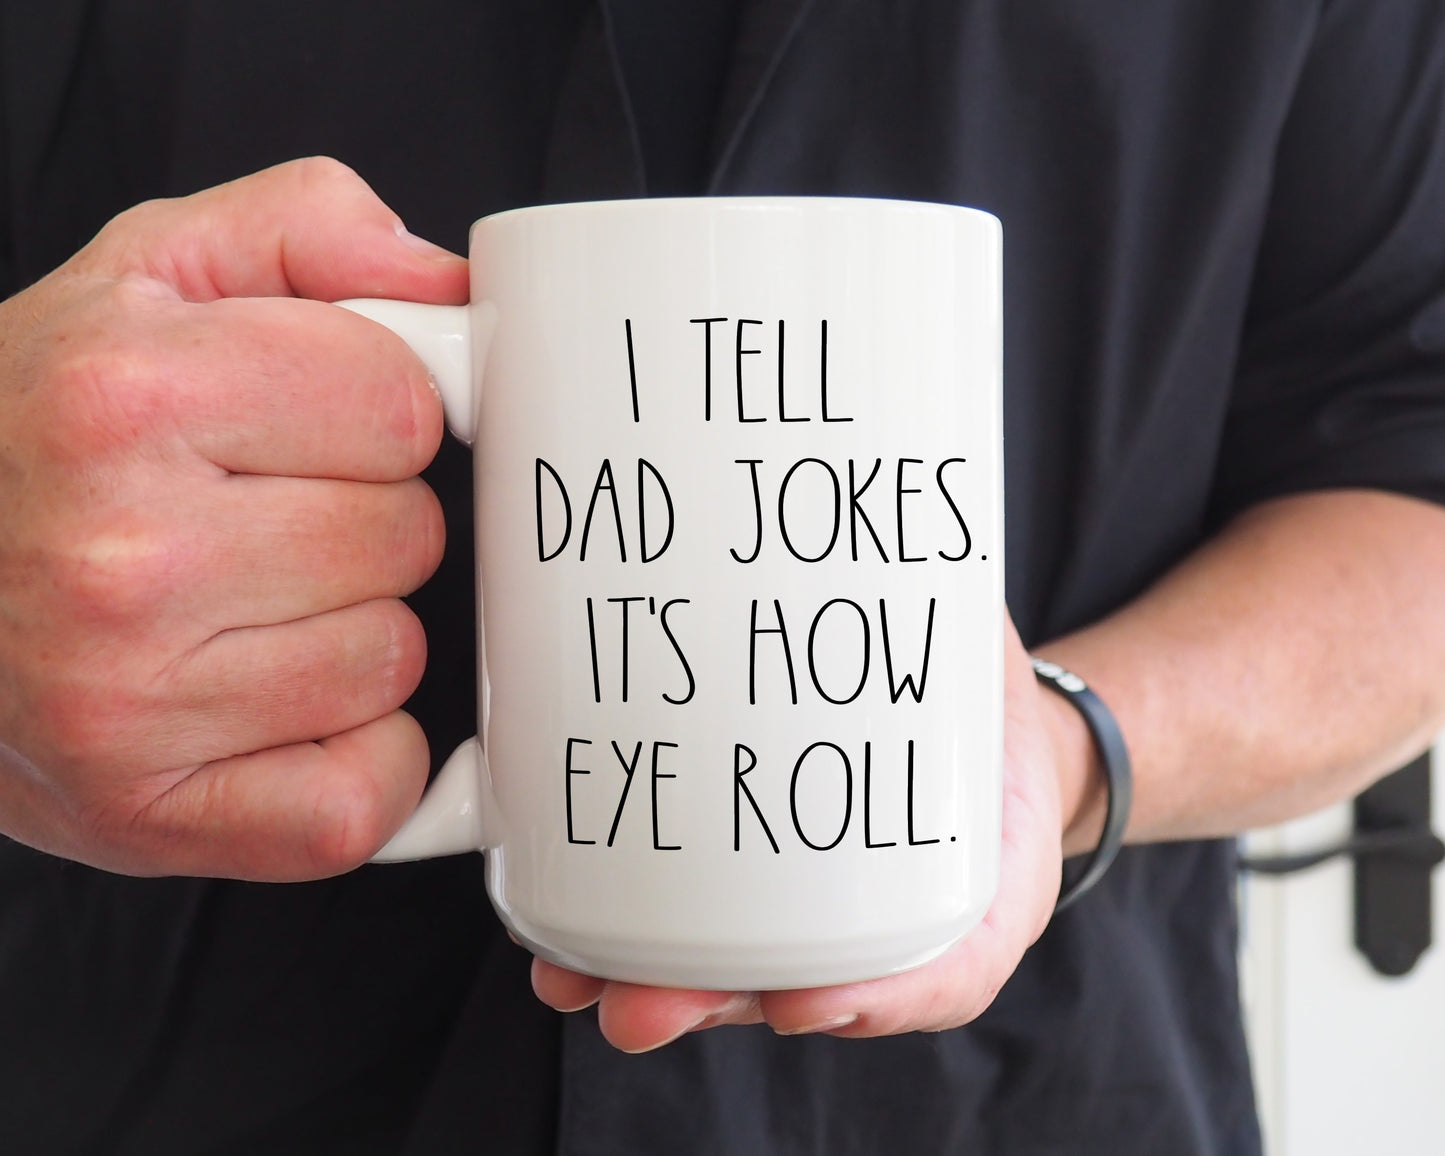 I tell dad jokes